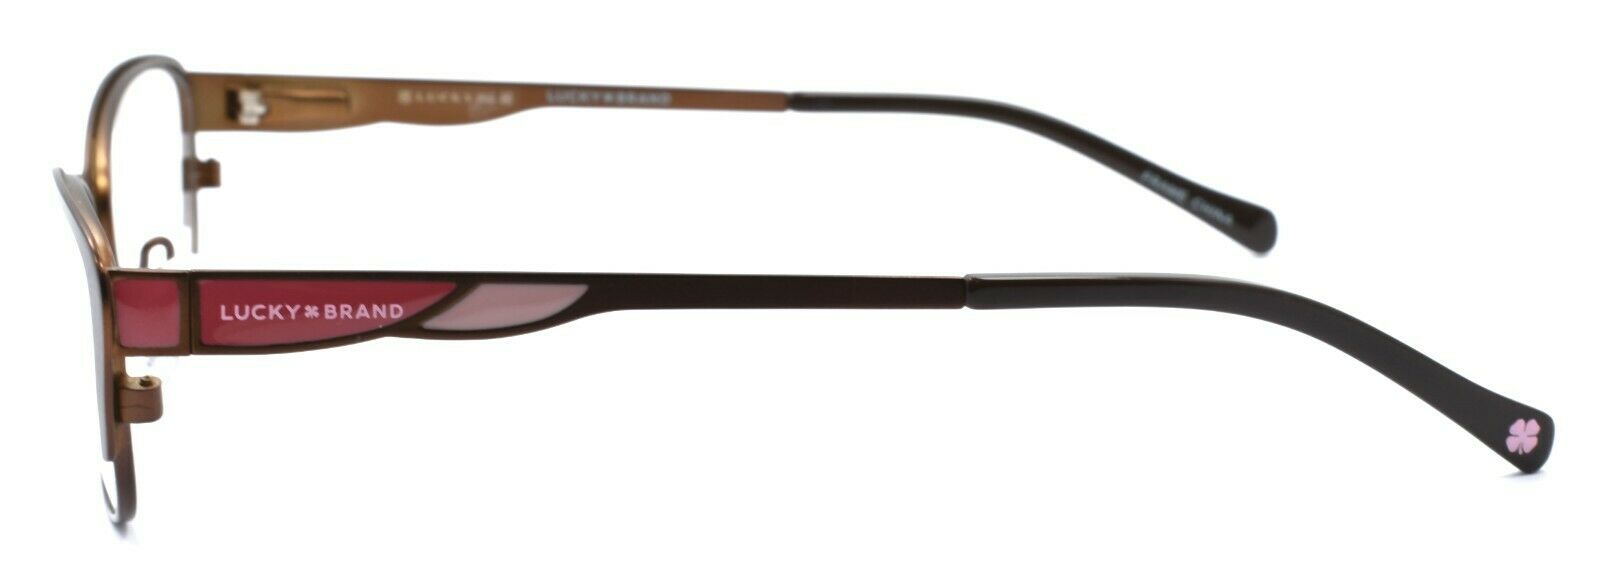 3-LUCKY BRAND D704 Kids Girls Eyeglasses Frames 47-15-130 Brown + CASE-751286282221-IKSpecs